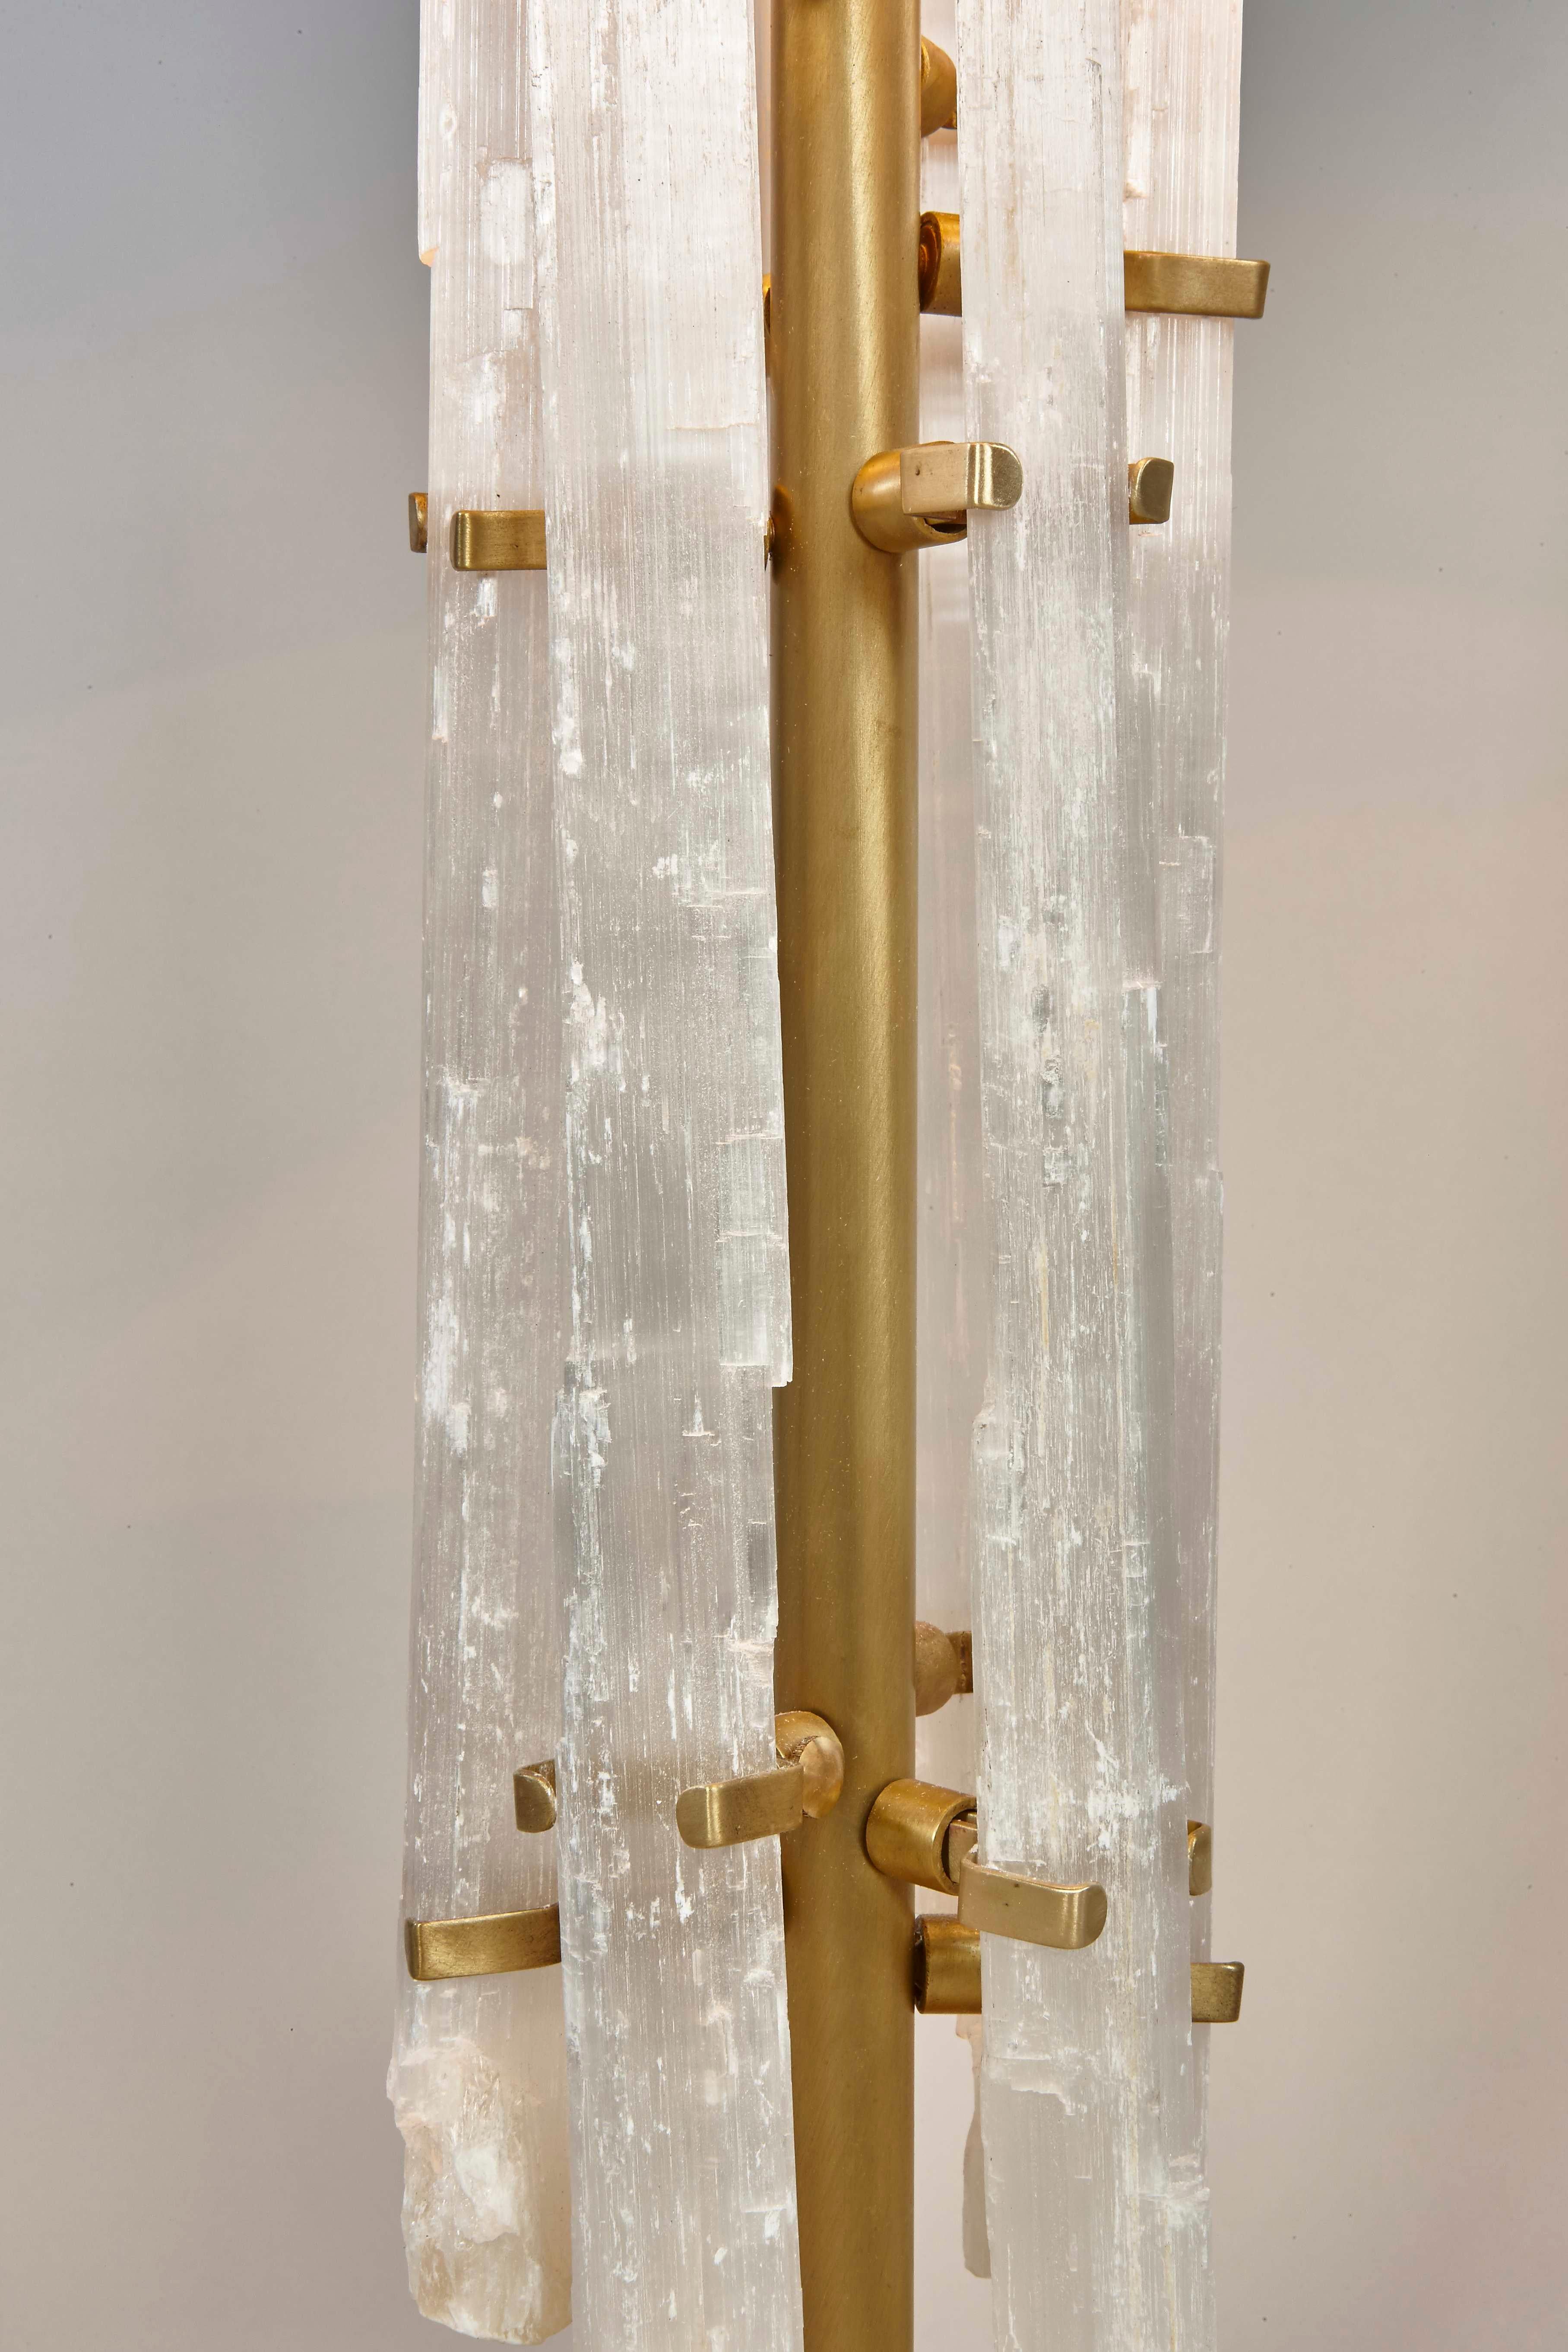 Notre lampe de table en cristal de roche est minutieusement fabriquée à la main, à l'aide de délicates tiges de cristal de roche positionnées organiquement autour d'une tige en bronze. Cette magnifique lampe apporte à la fois élégance et